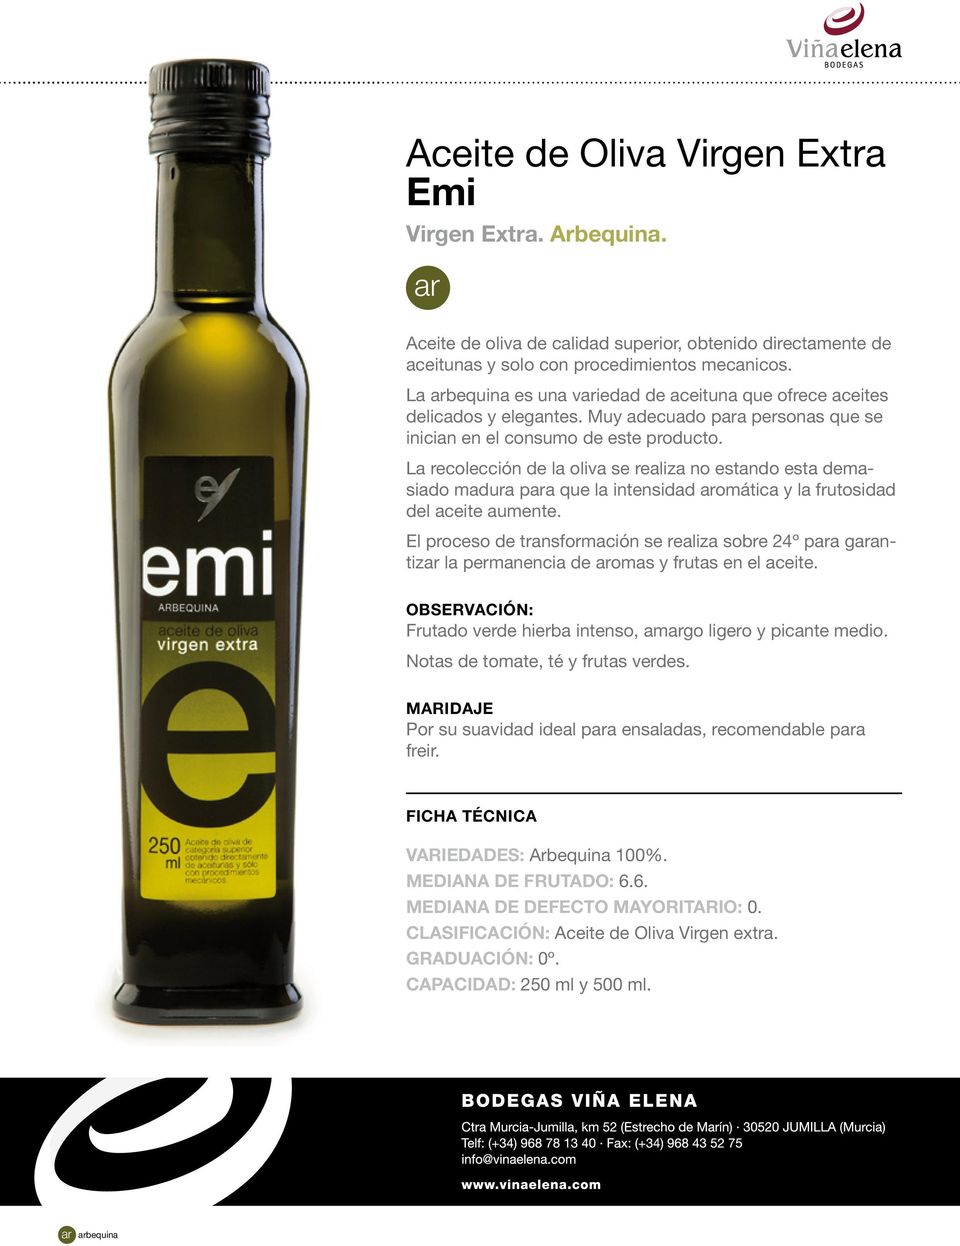 La recolección de la oliva se realiza no estando esta demasiado madura para que la intensidad aromática y la frutosidad del aceite aumente.